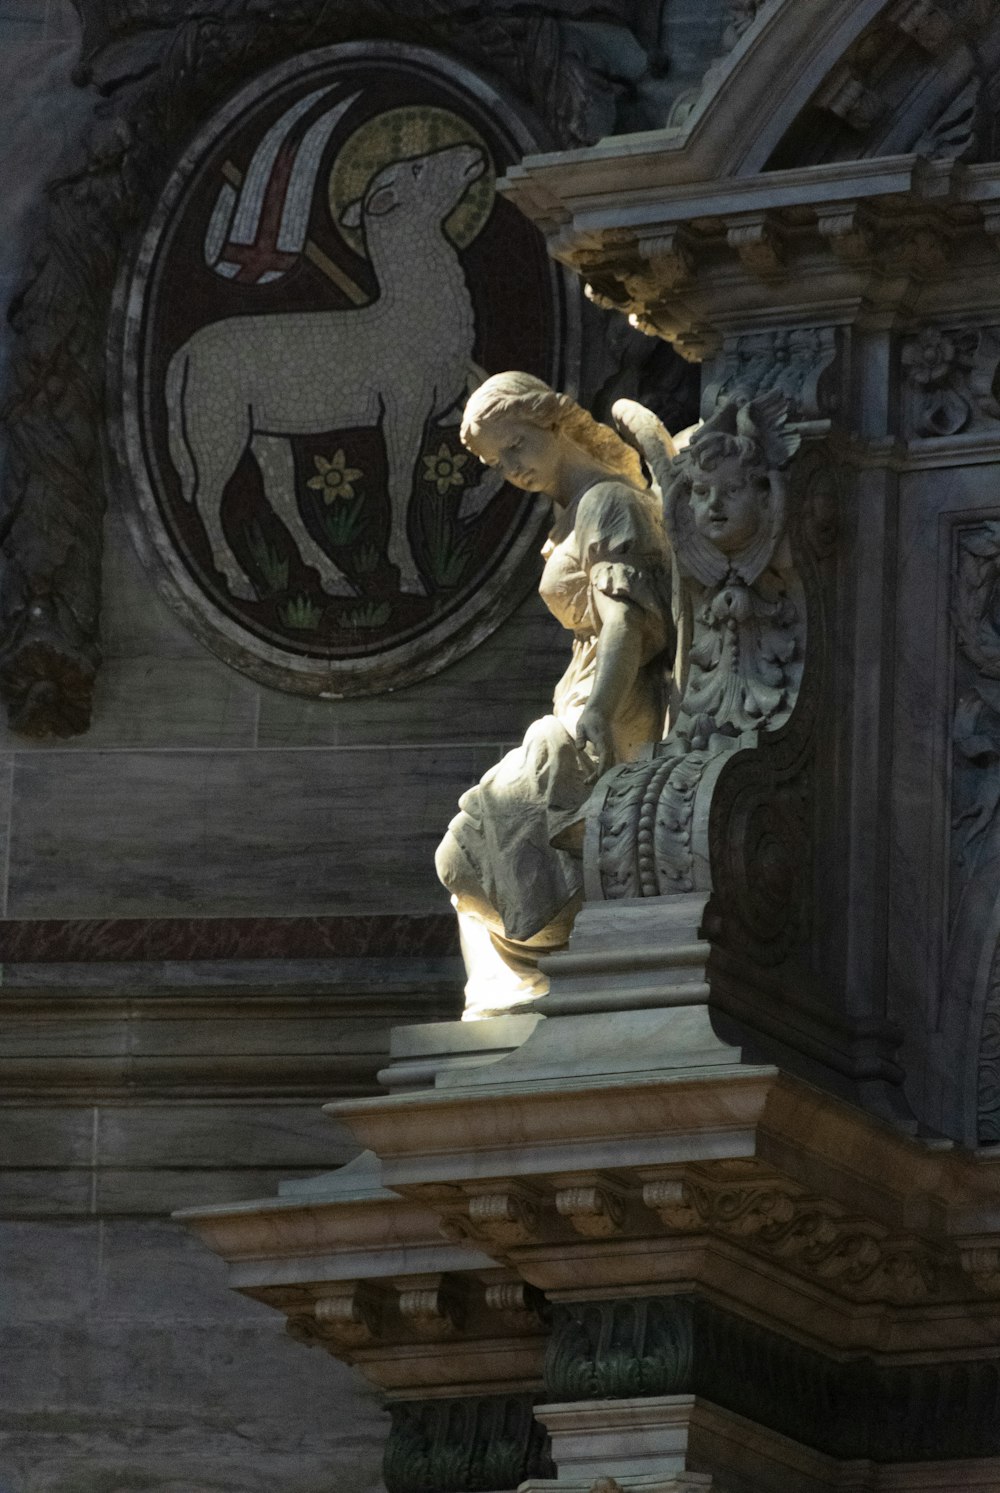 a statue of an angel on a pillar